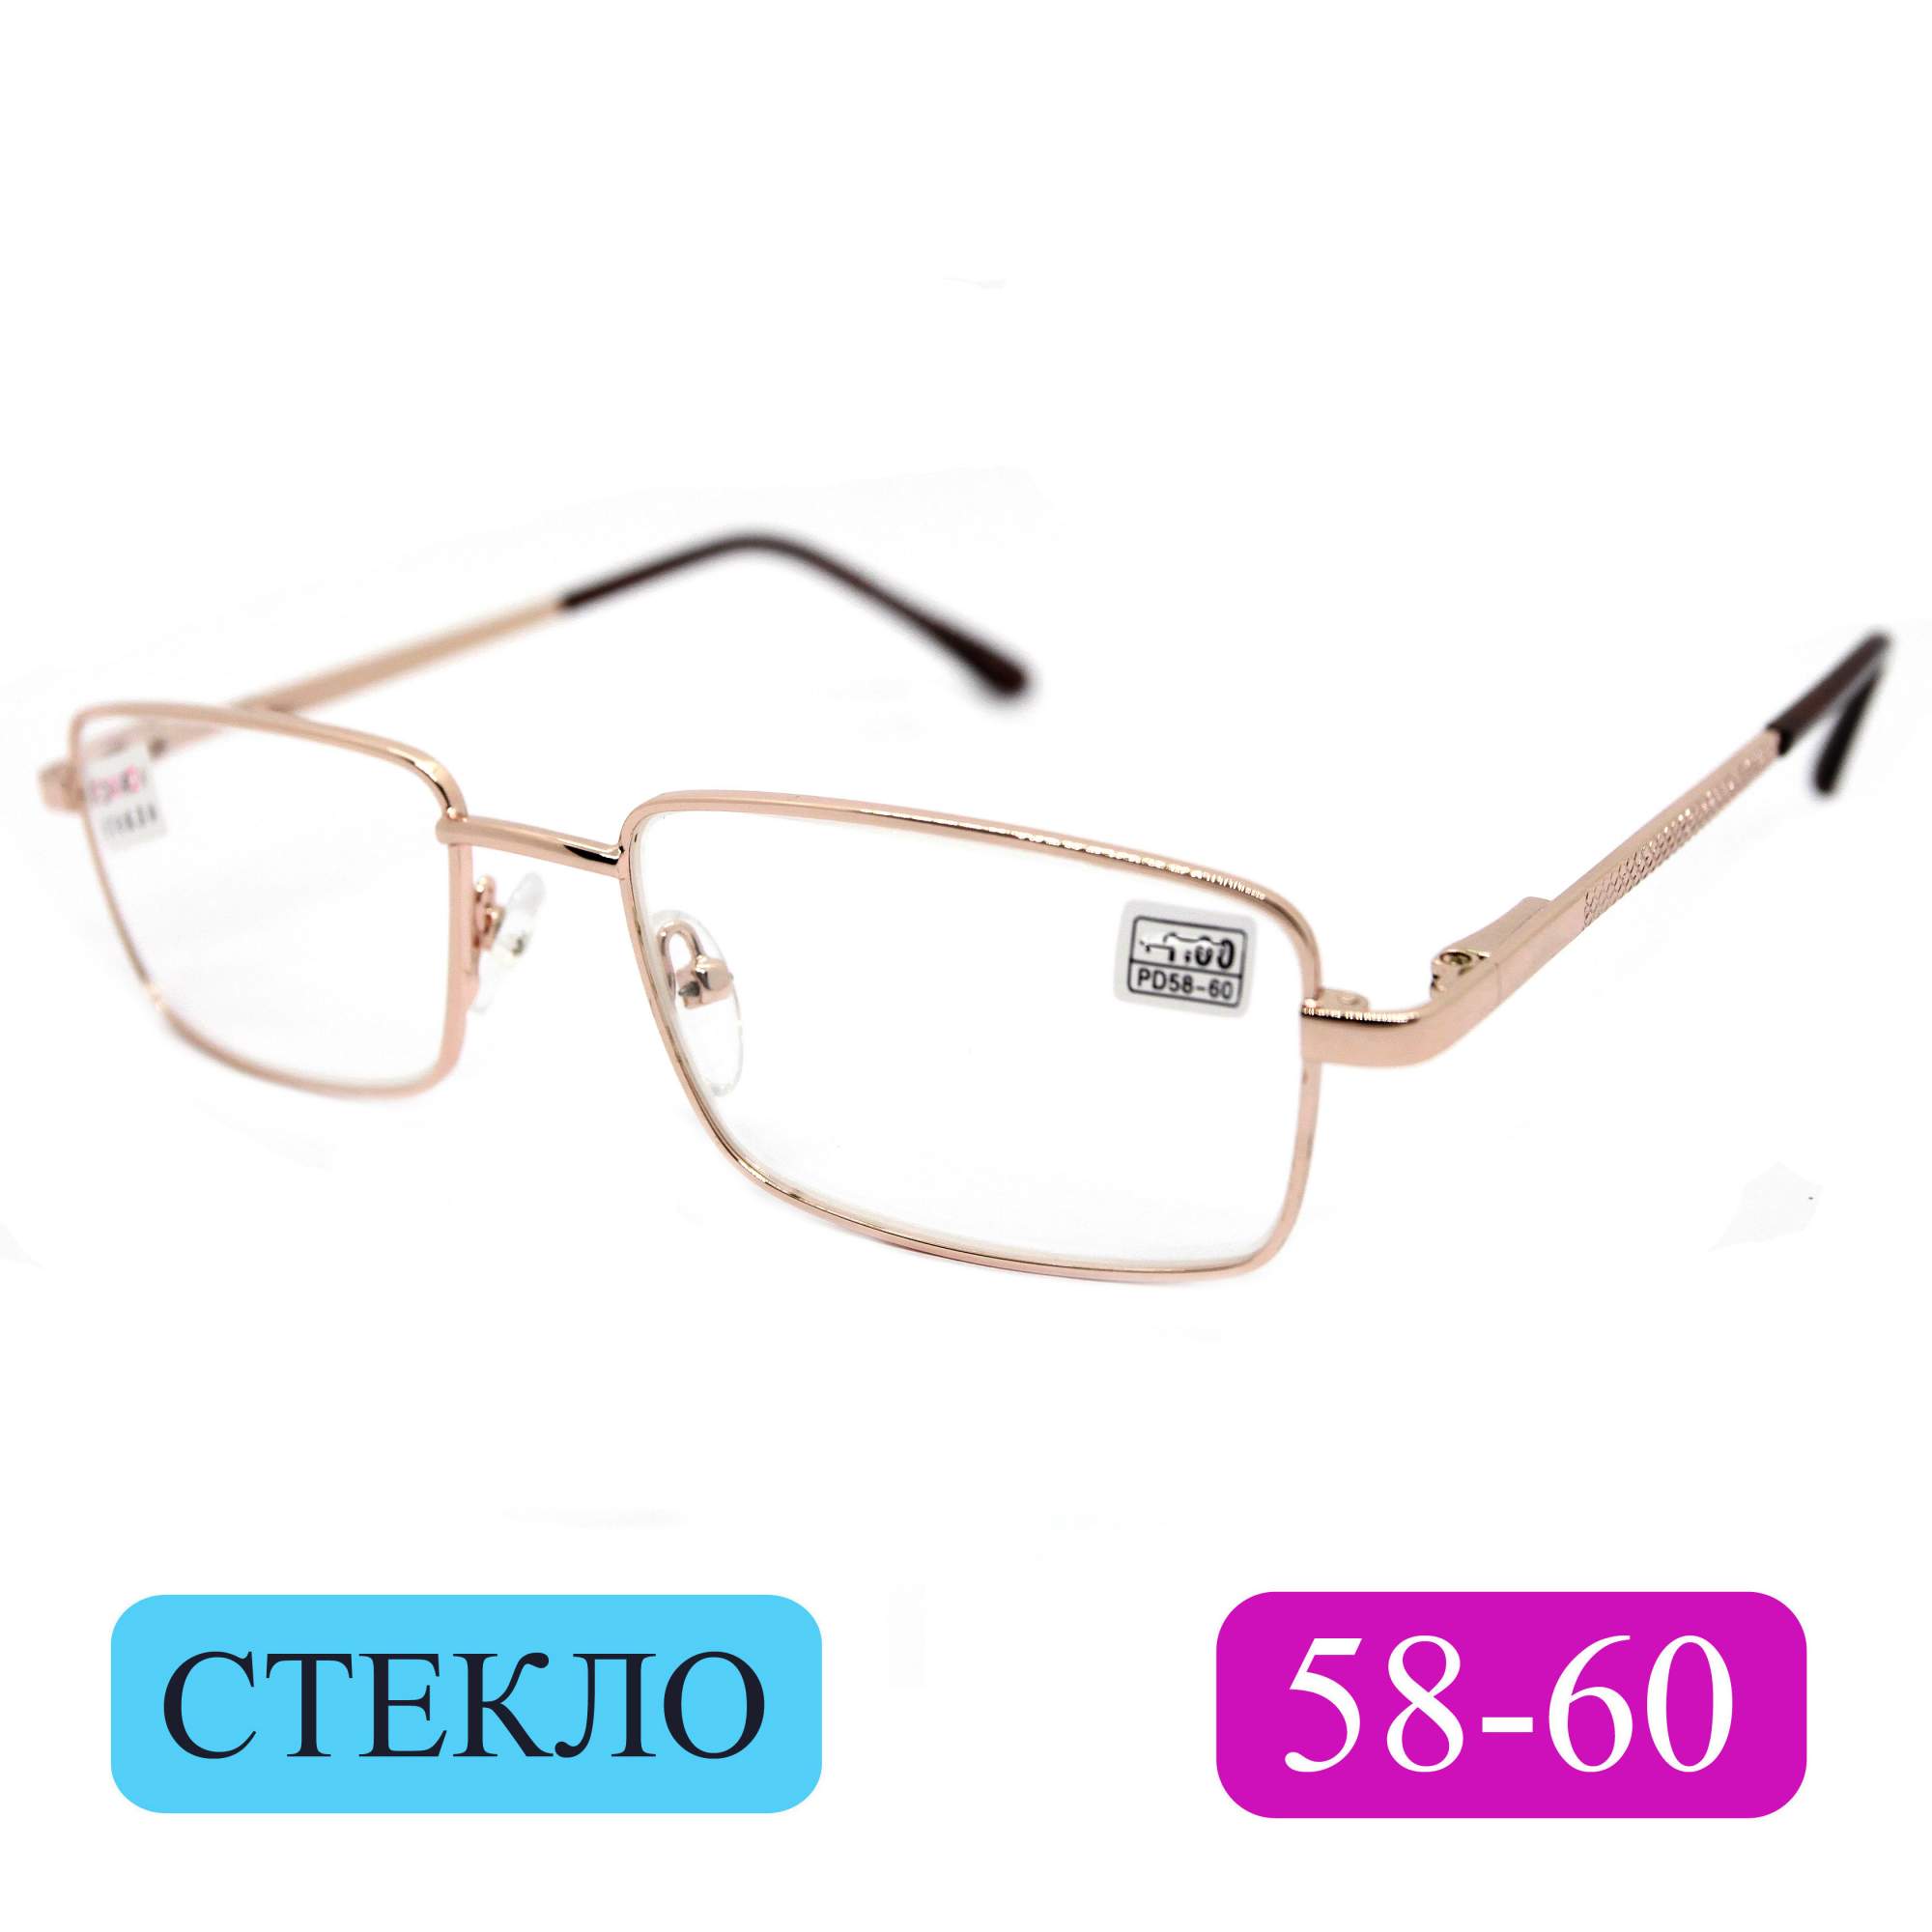 Готовые очки Fedrov 569, со стеклянной линзой, +3,00, без футляра, золотые, РЦ 58-60